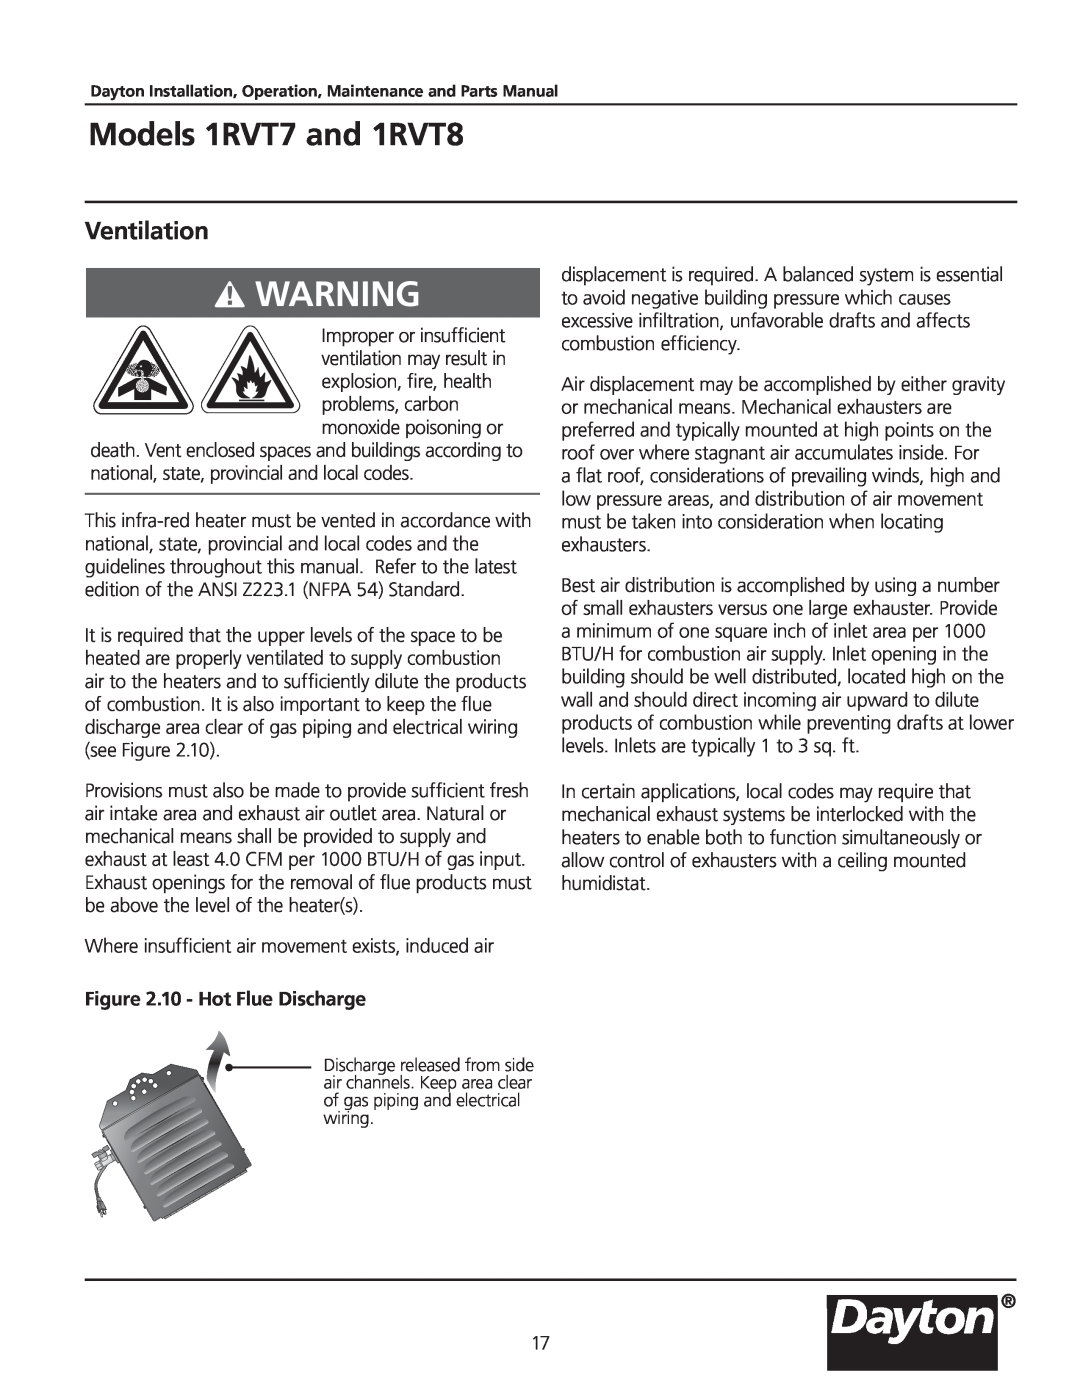 Dayton manual Ventilation, Models 1RVT7 and 1RVT8, 10 - Hot Flue Discharge 